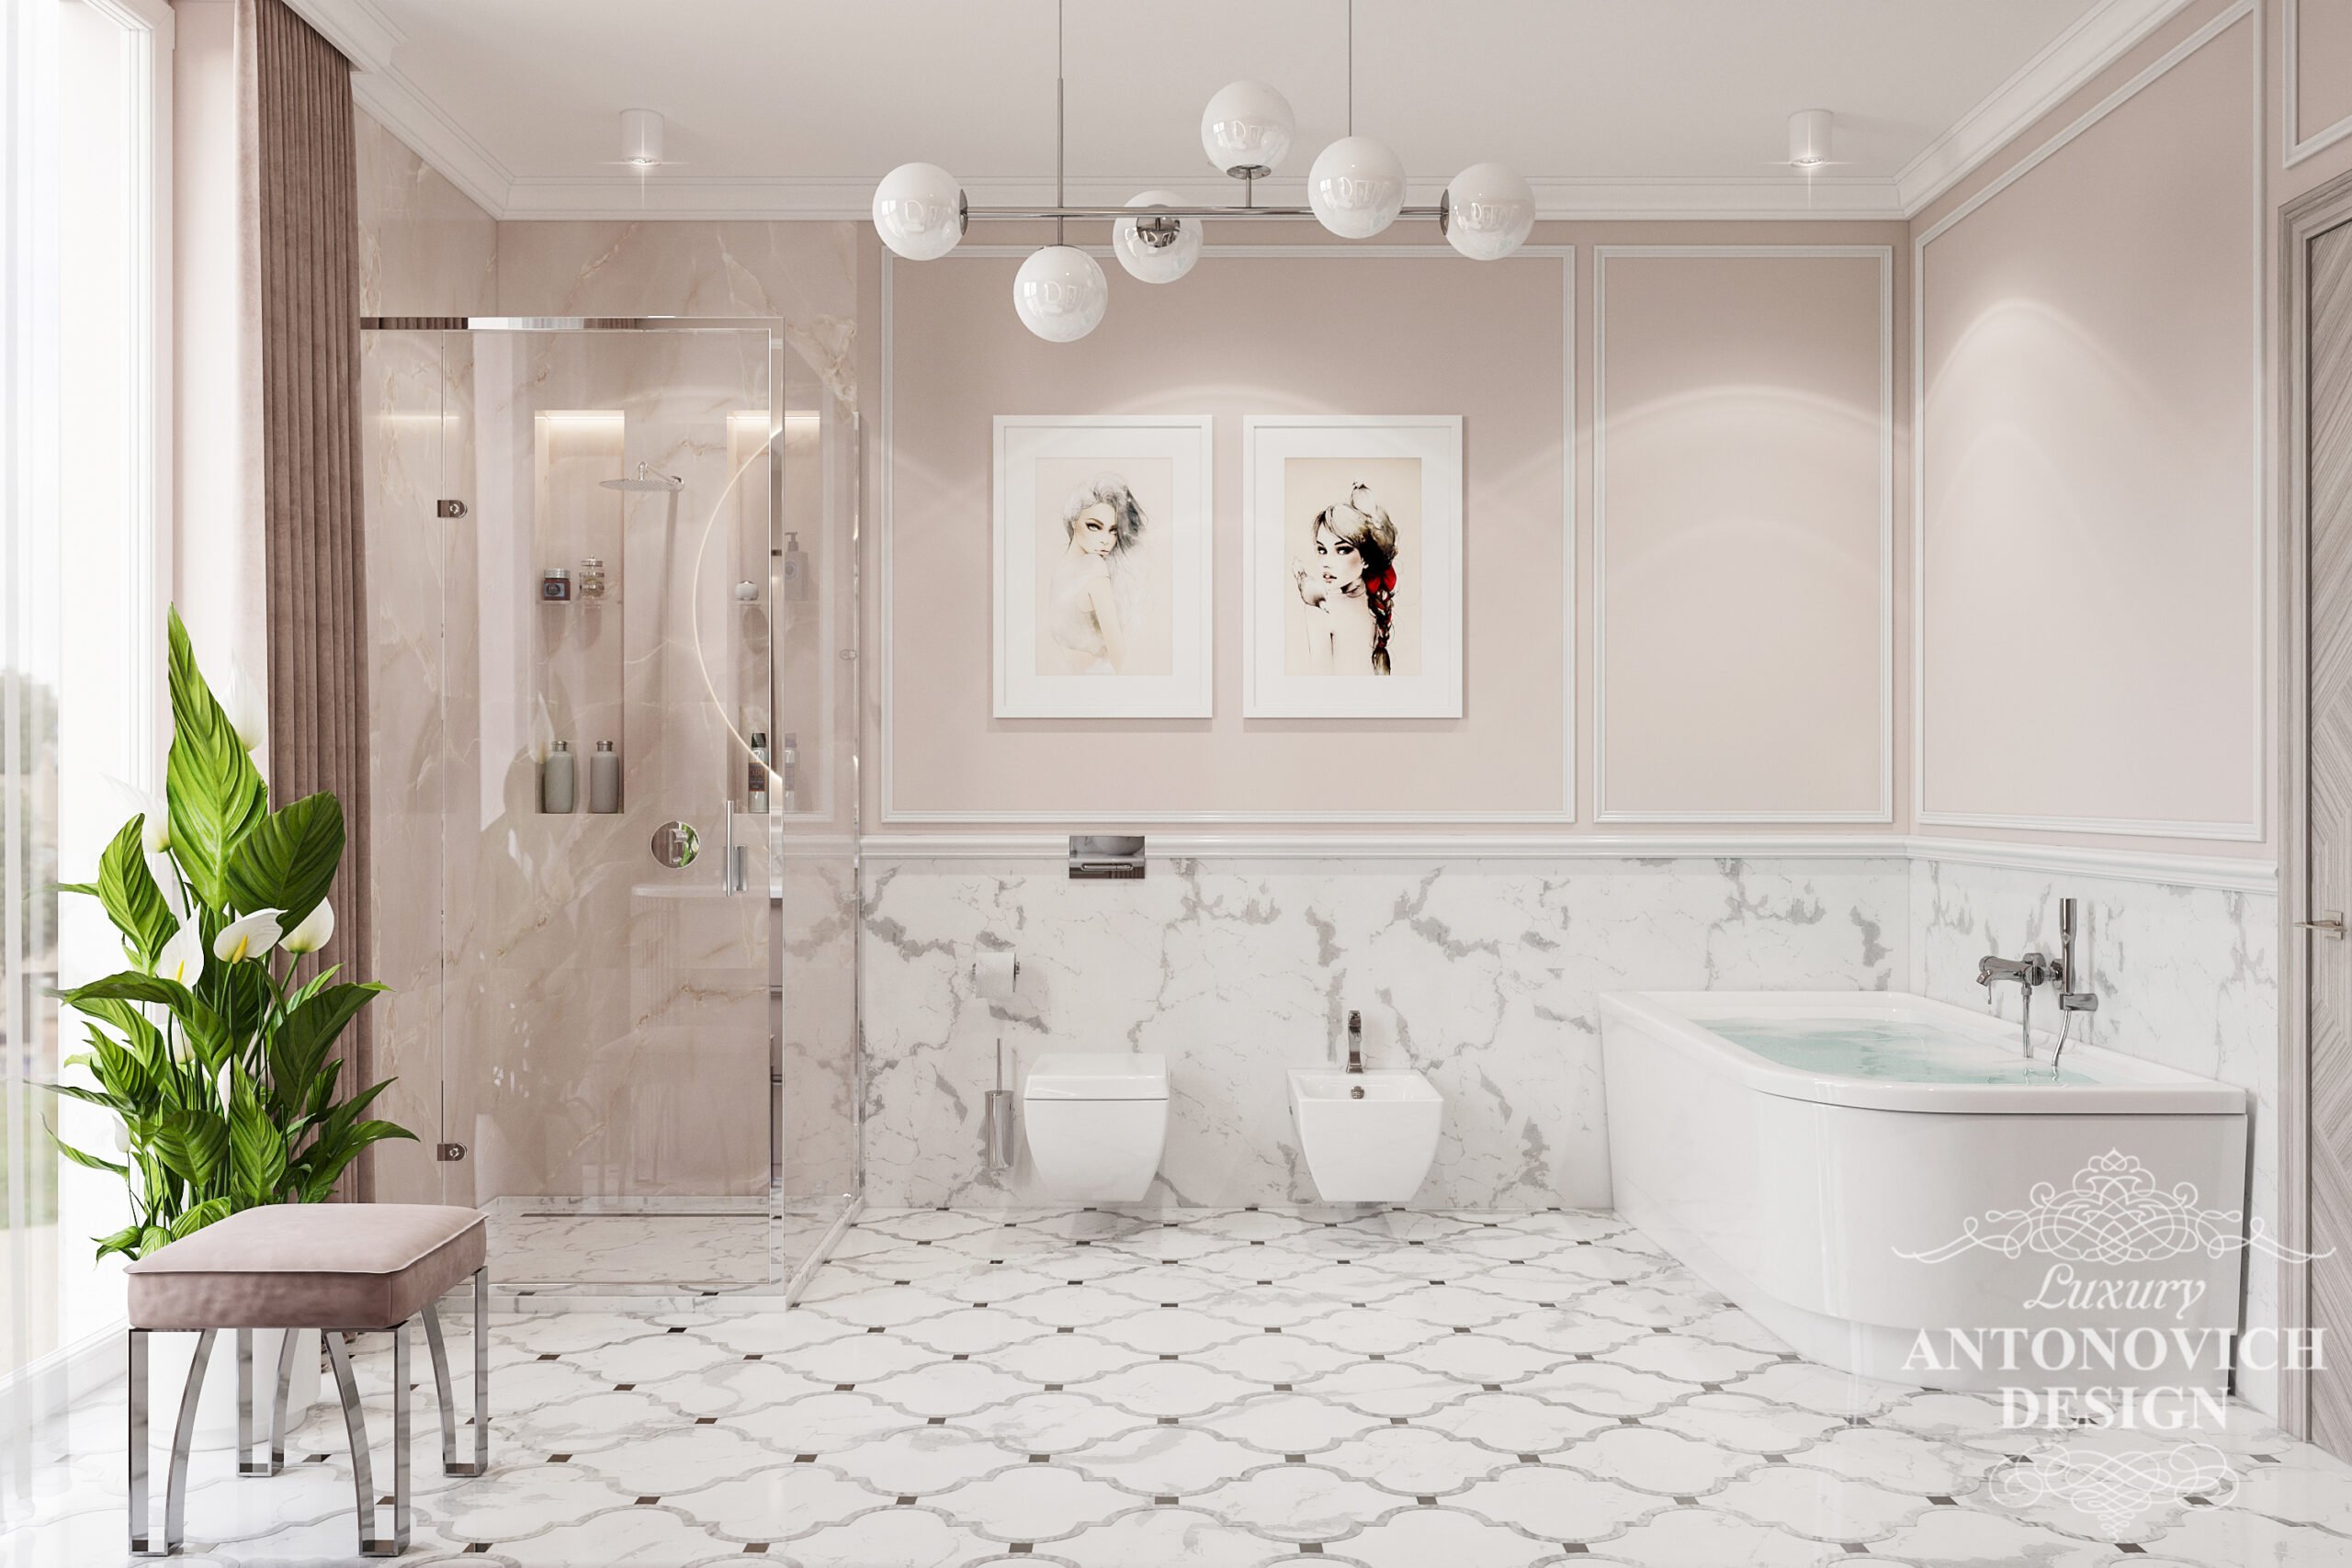 Ванная комната в бежевых оттенках и отделкой роскошных итальянских пород мрамора